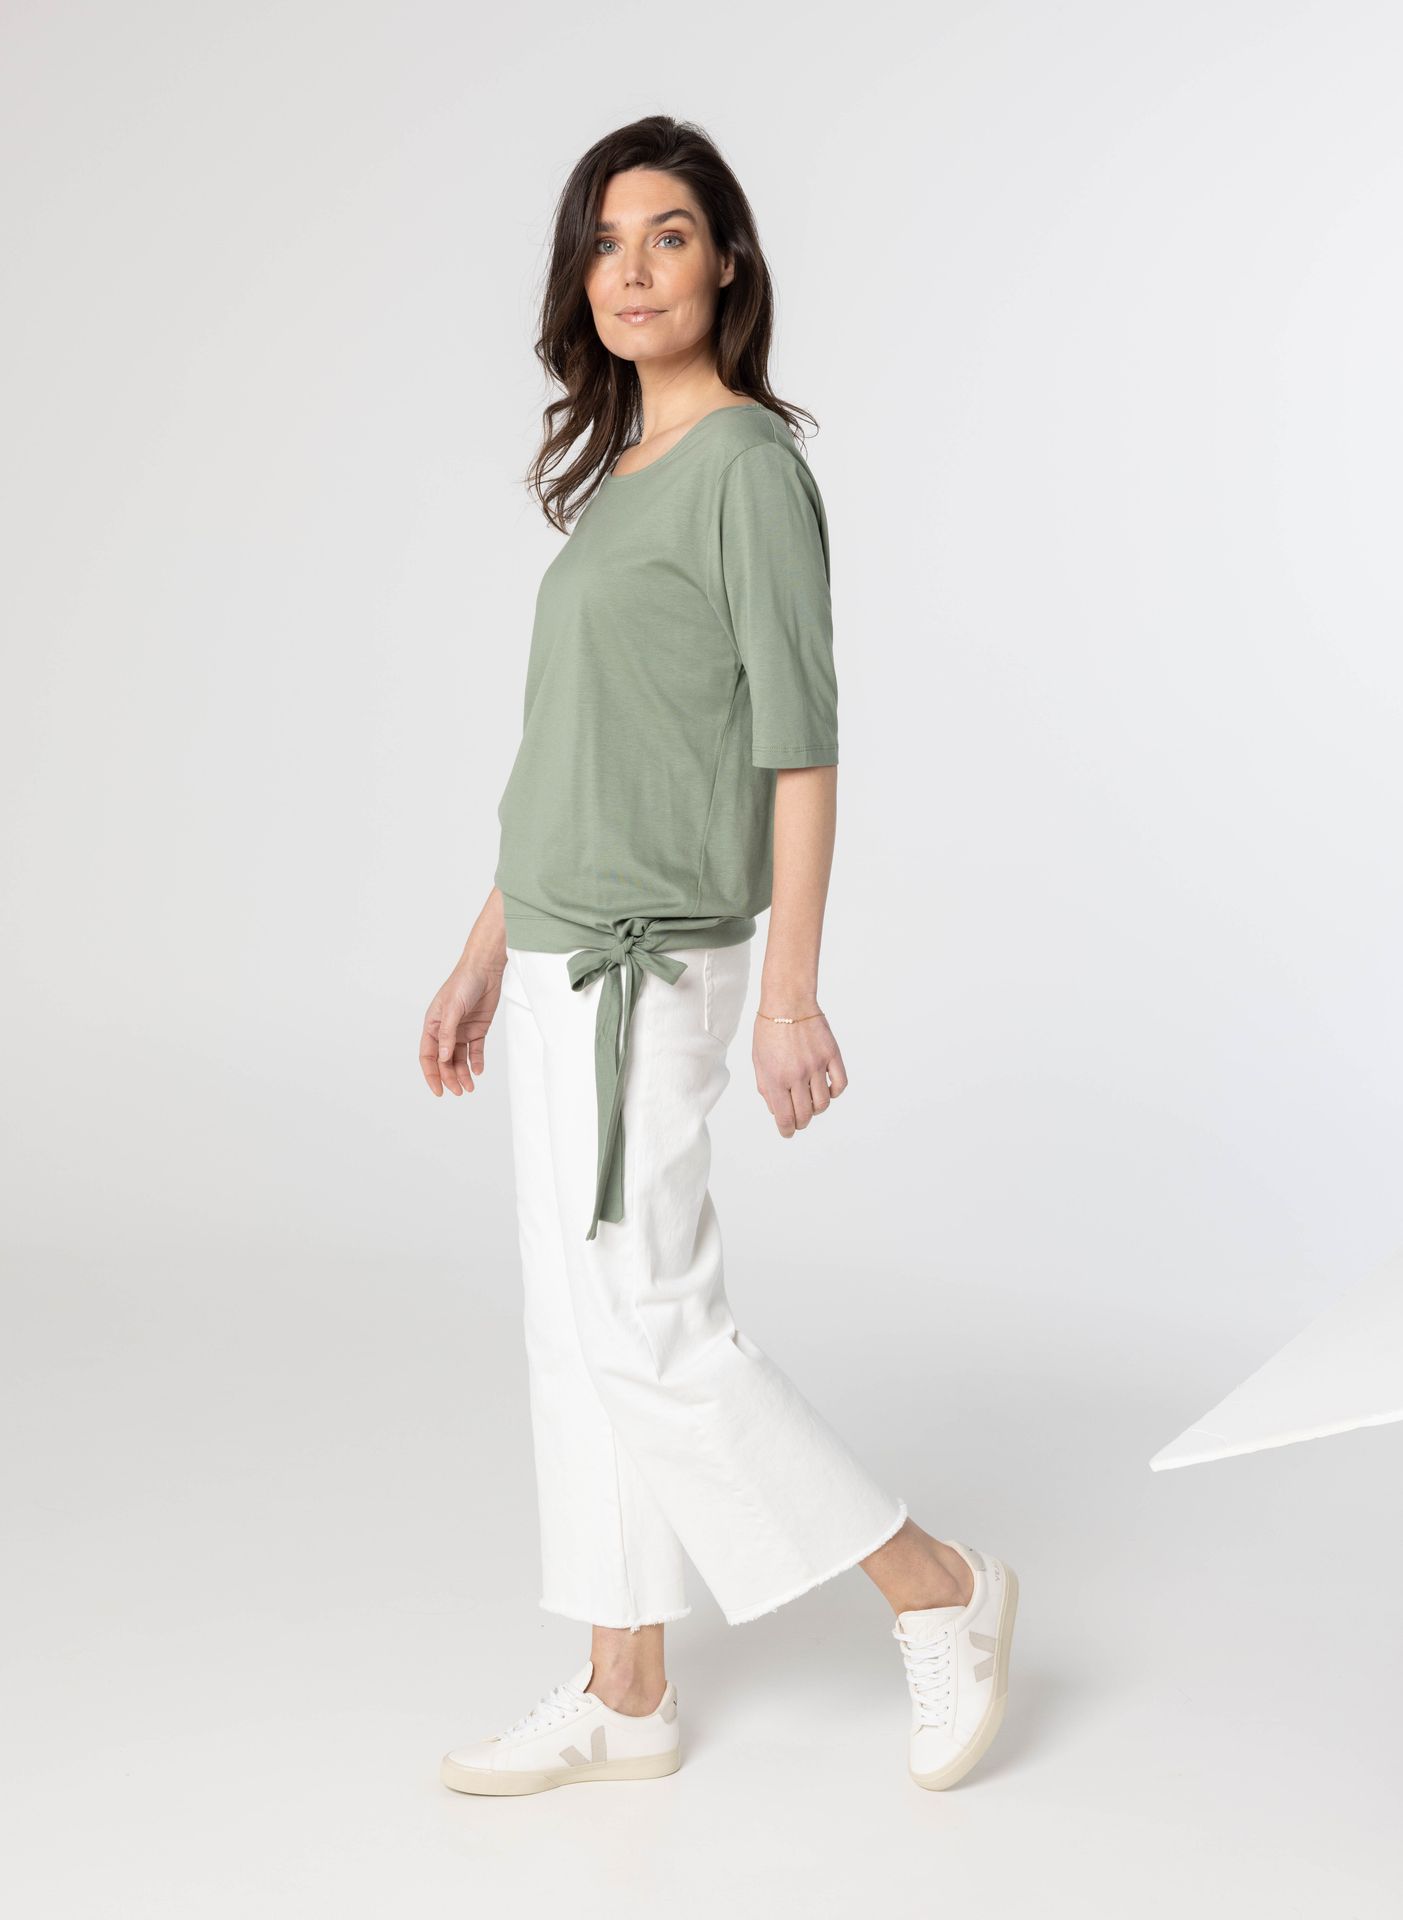 Norah Groen shirt green/grey 209993-540